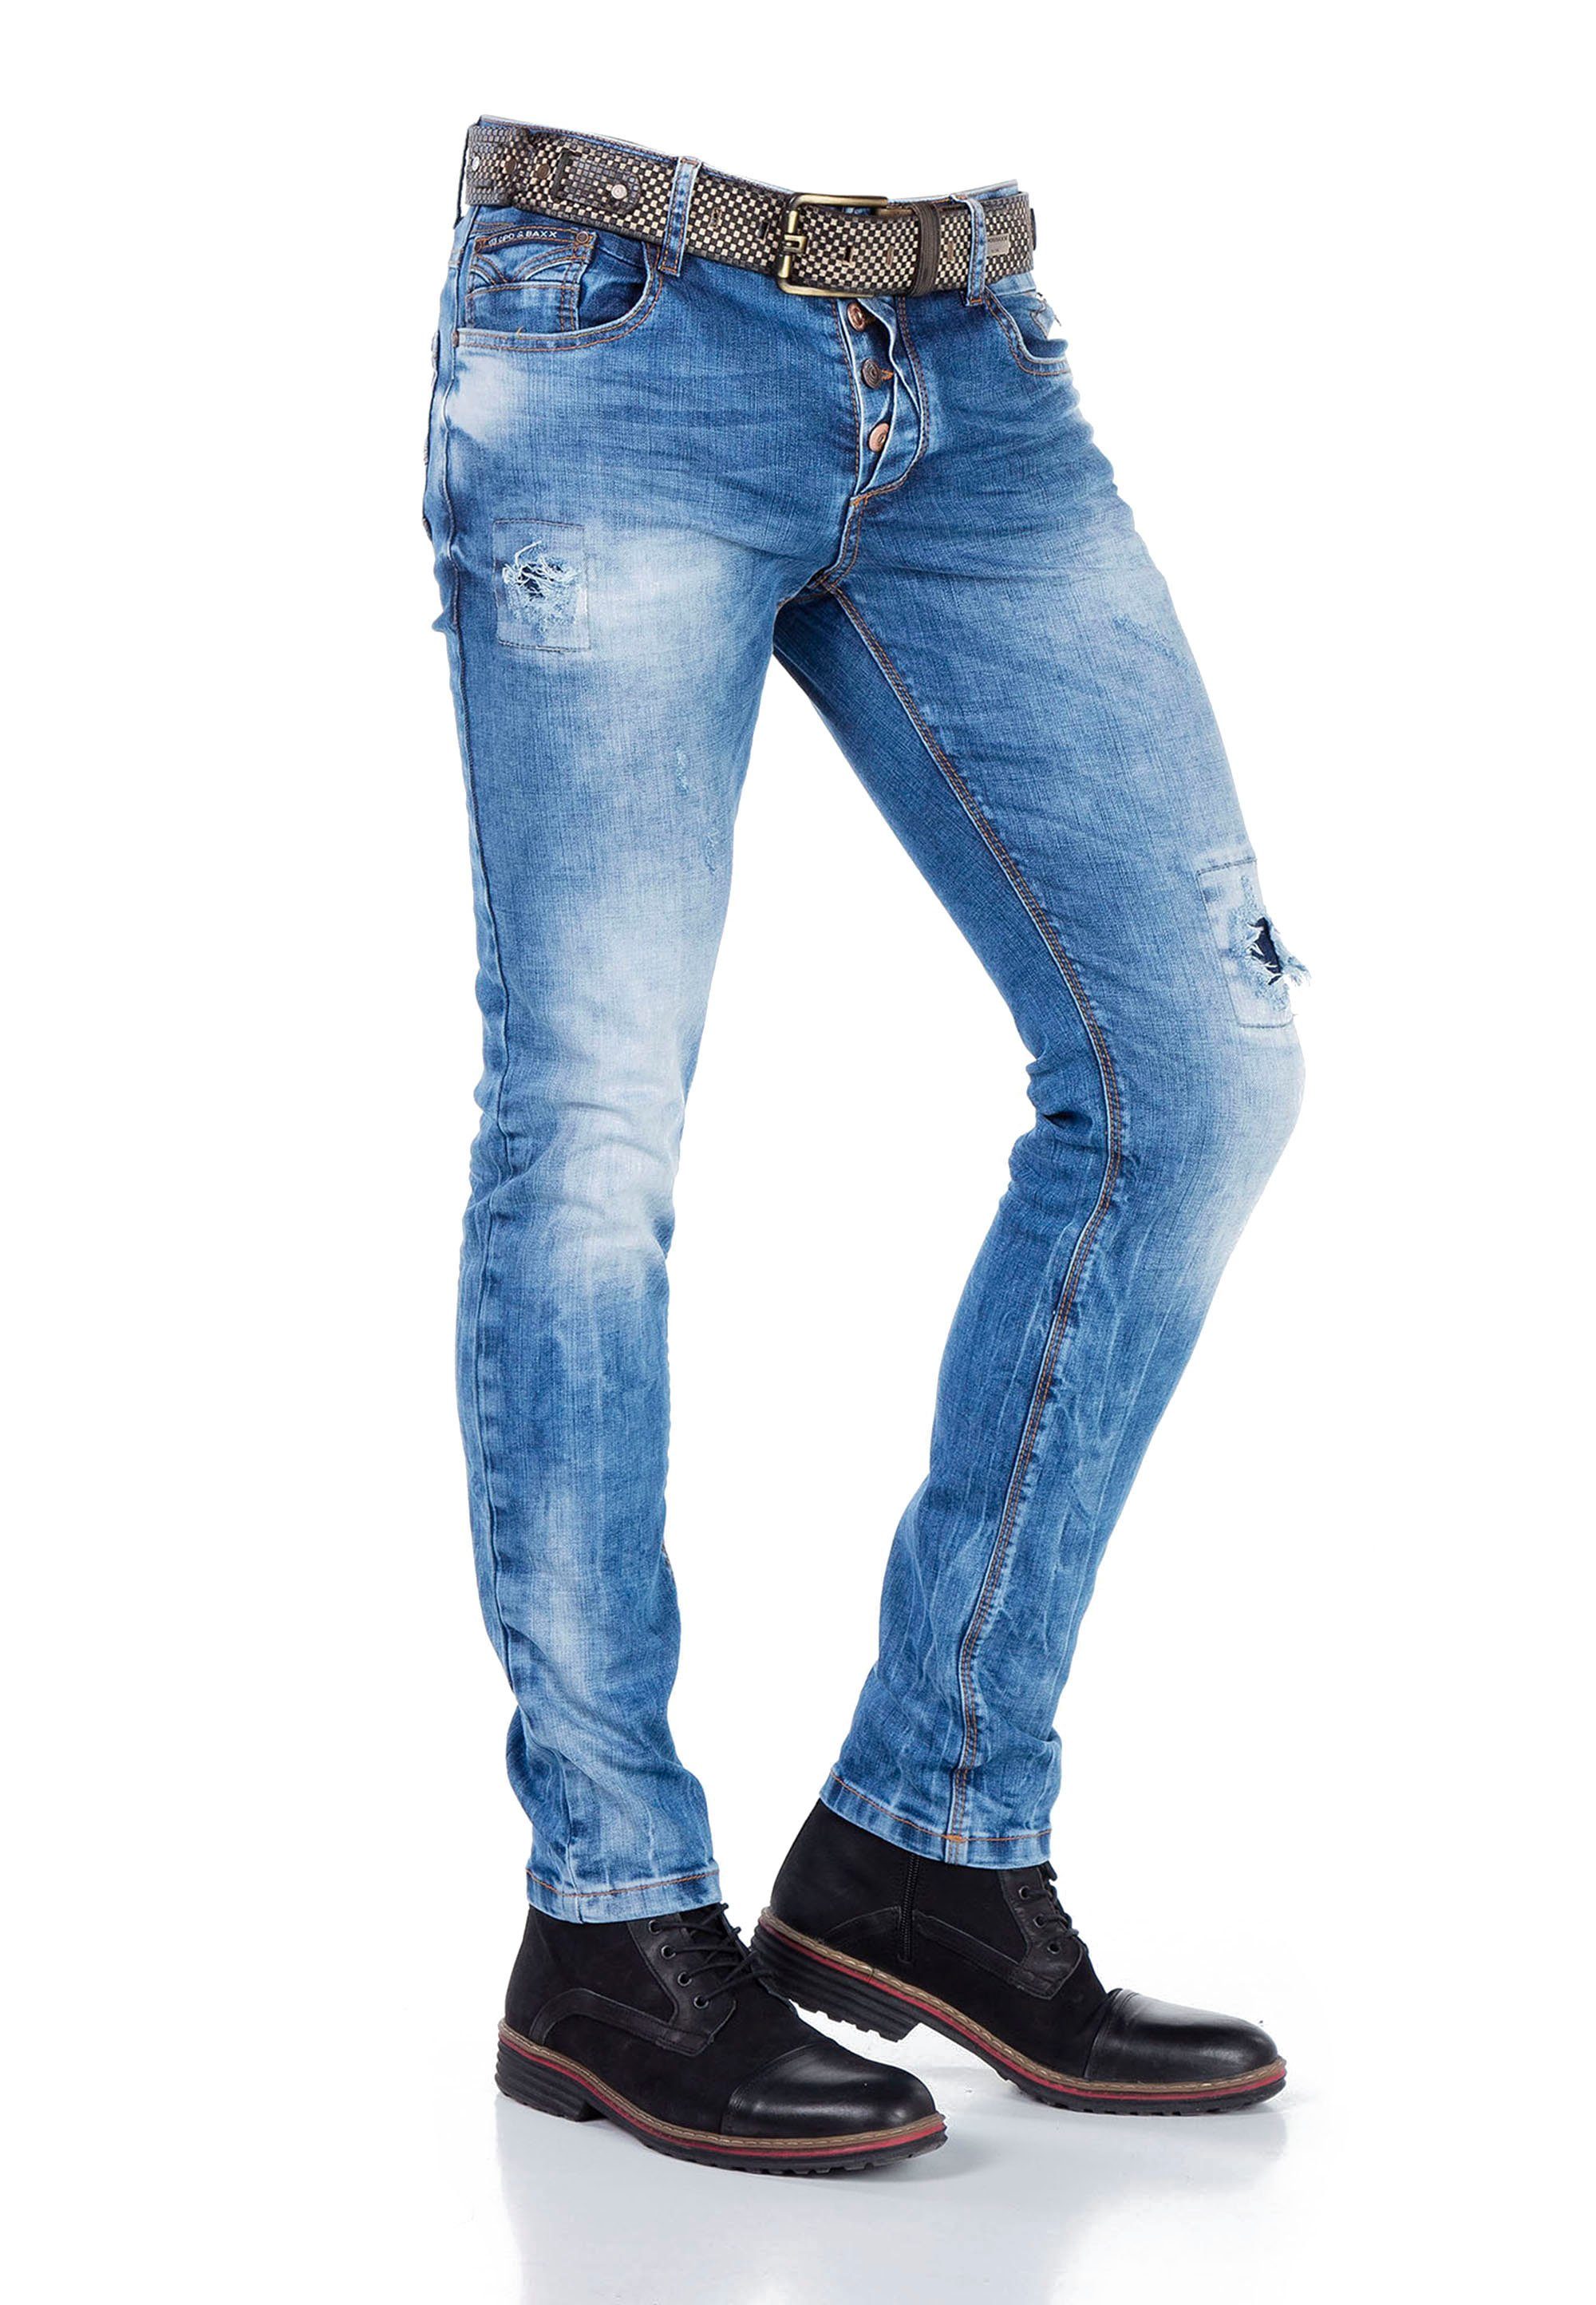 & Bequeme im Baxx Cipo Jeans Look trendigen